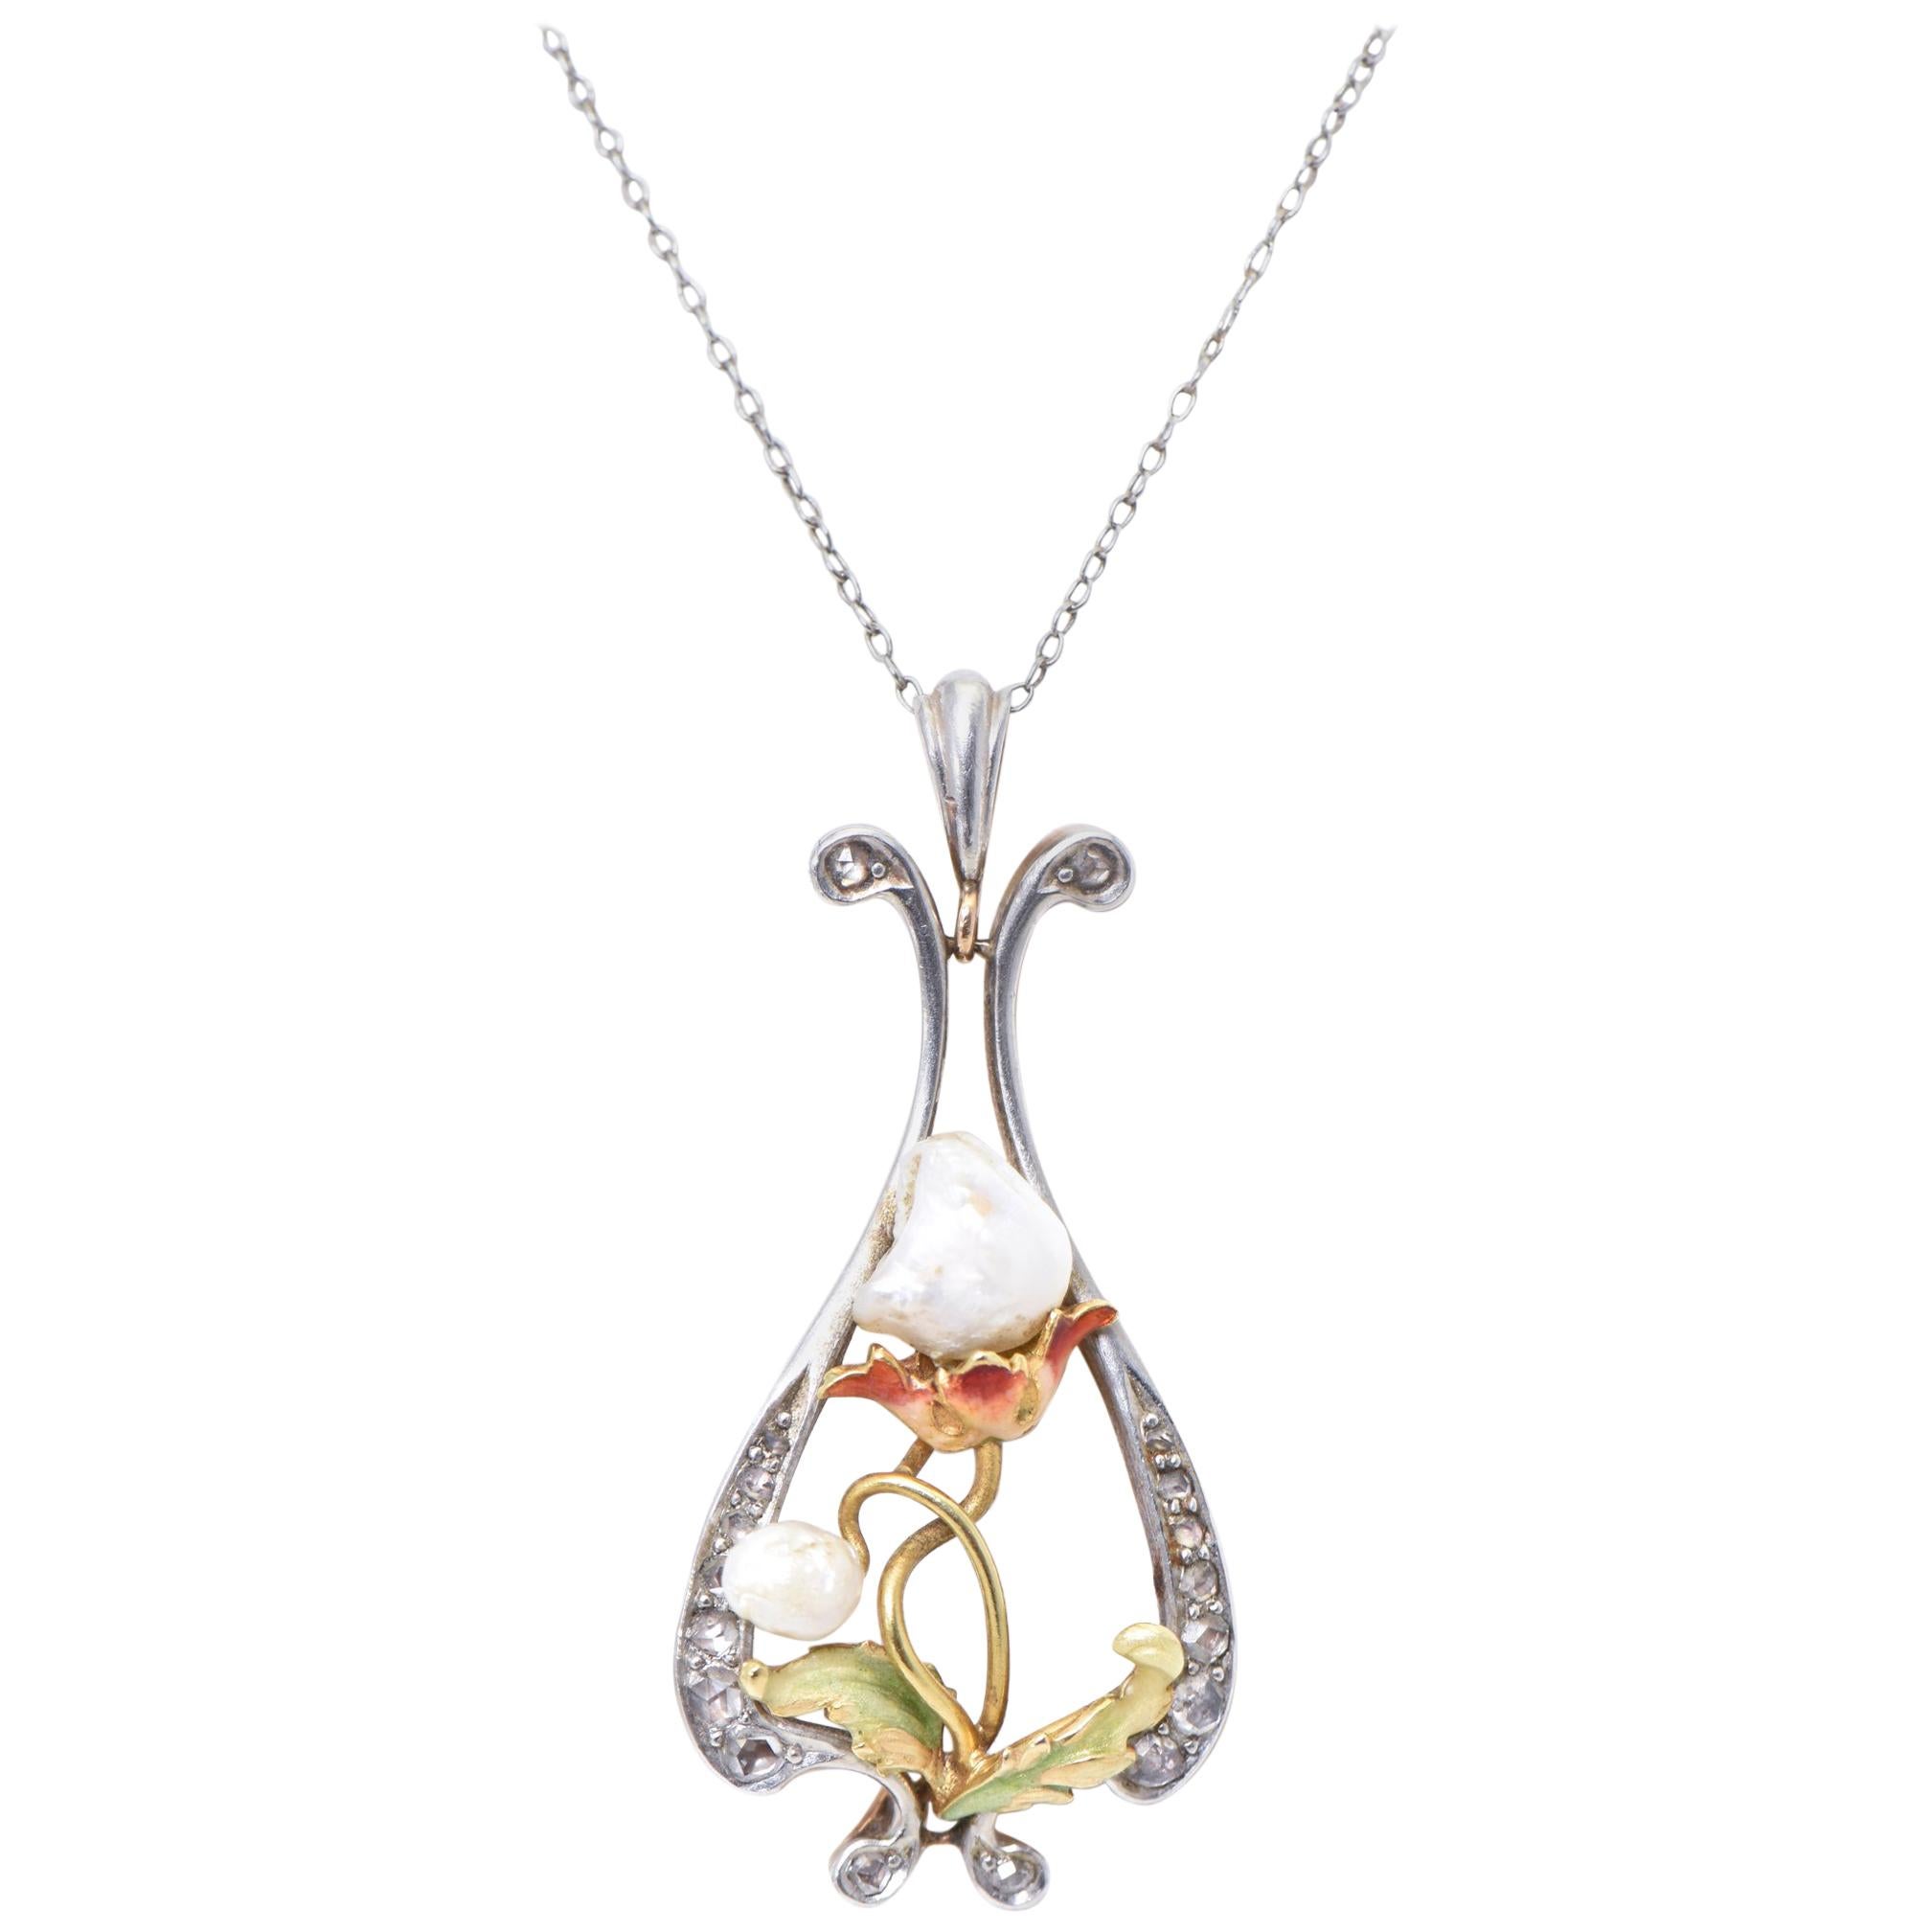 Art Nouveau Pearl, Enamel and Diamond Gold Floral Pendant on Platinum Chain